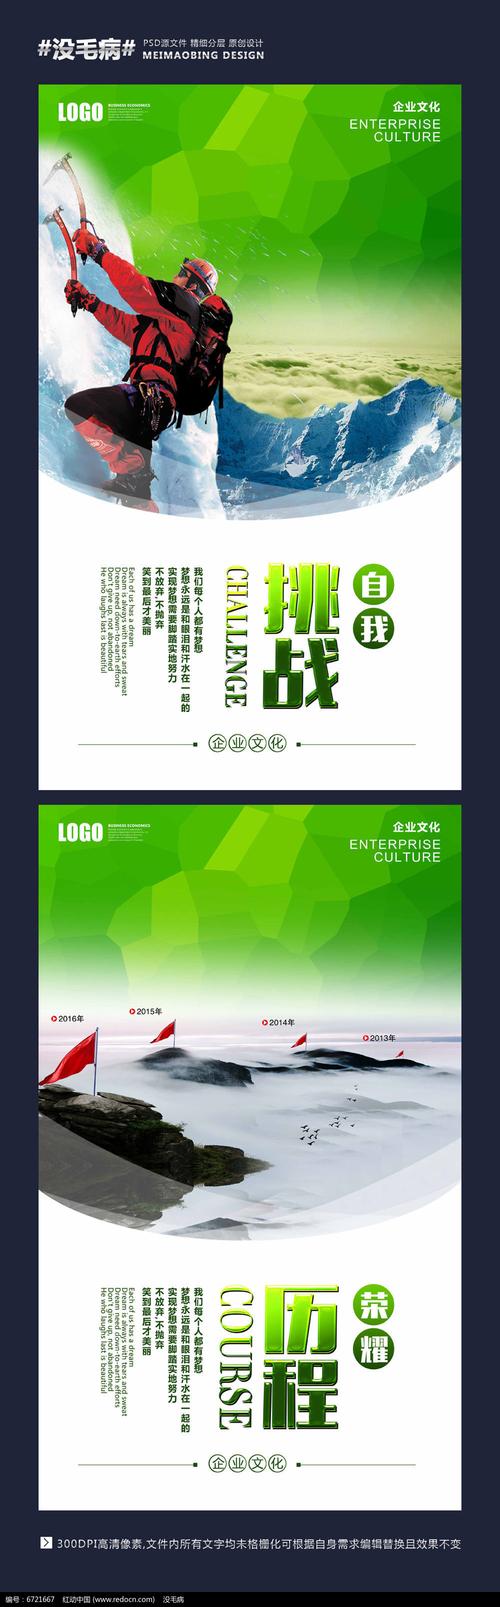 江苏绿威环保科技亿博体育app有限公司(江苏绿威环保科技有限公司招聘)